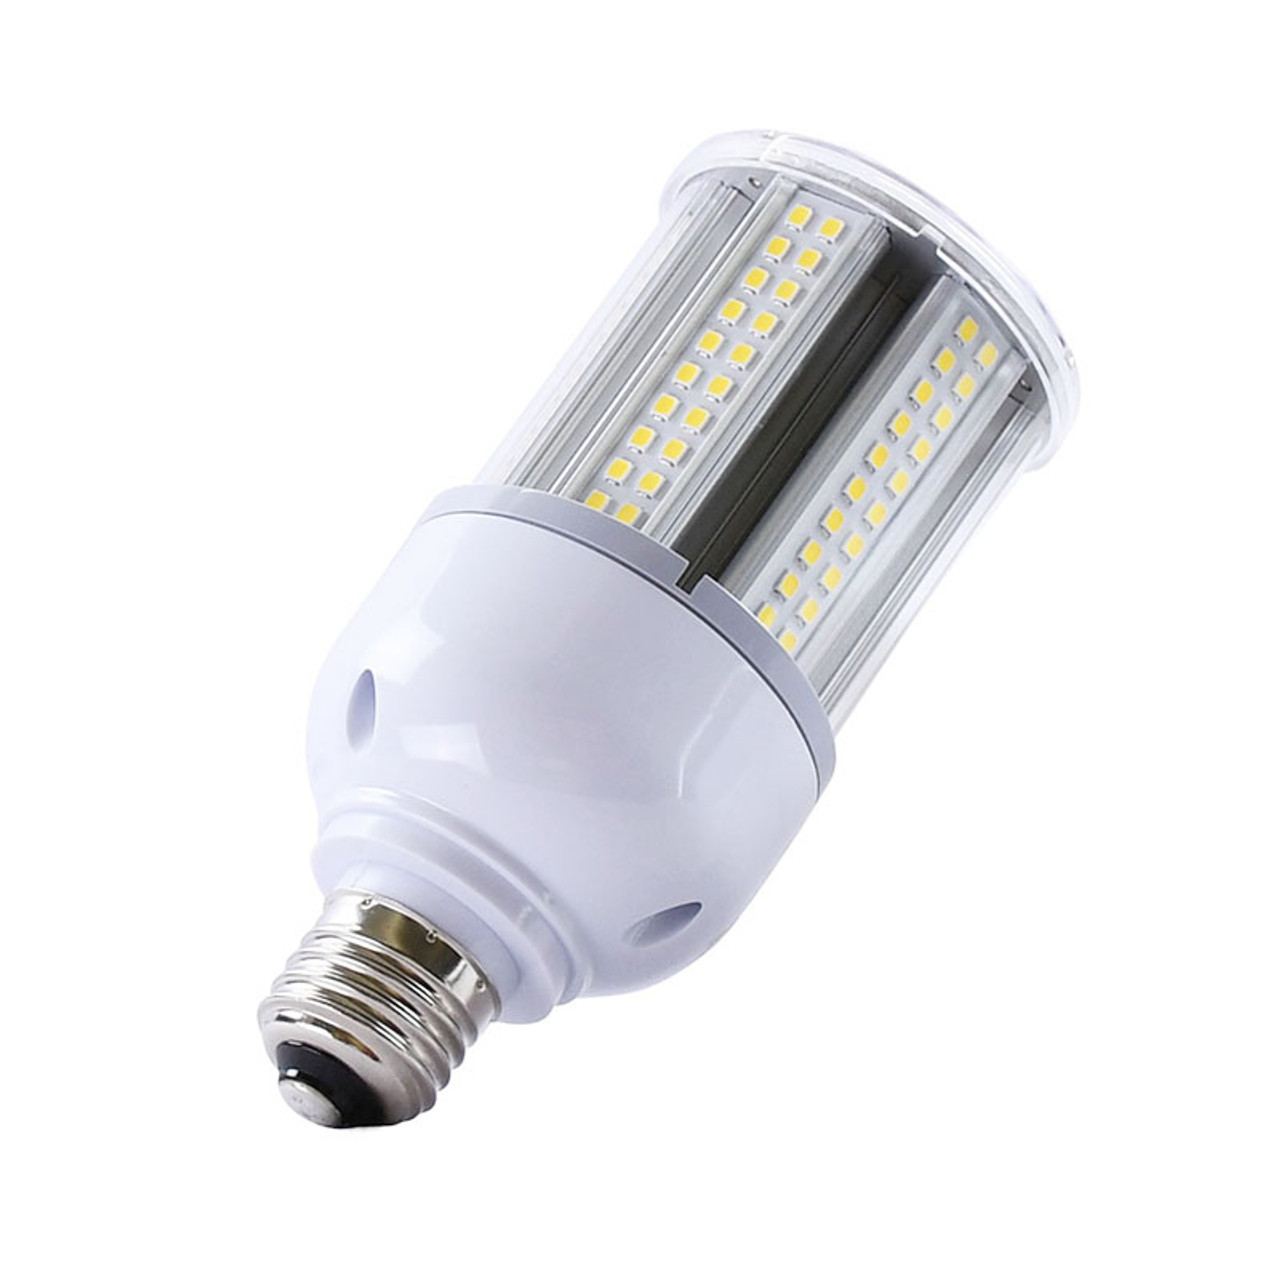 Lampadina LED G9 4 Watt Tubo (400 lumen)